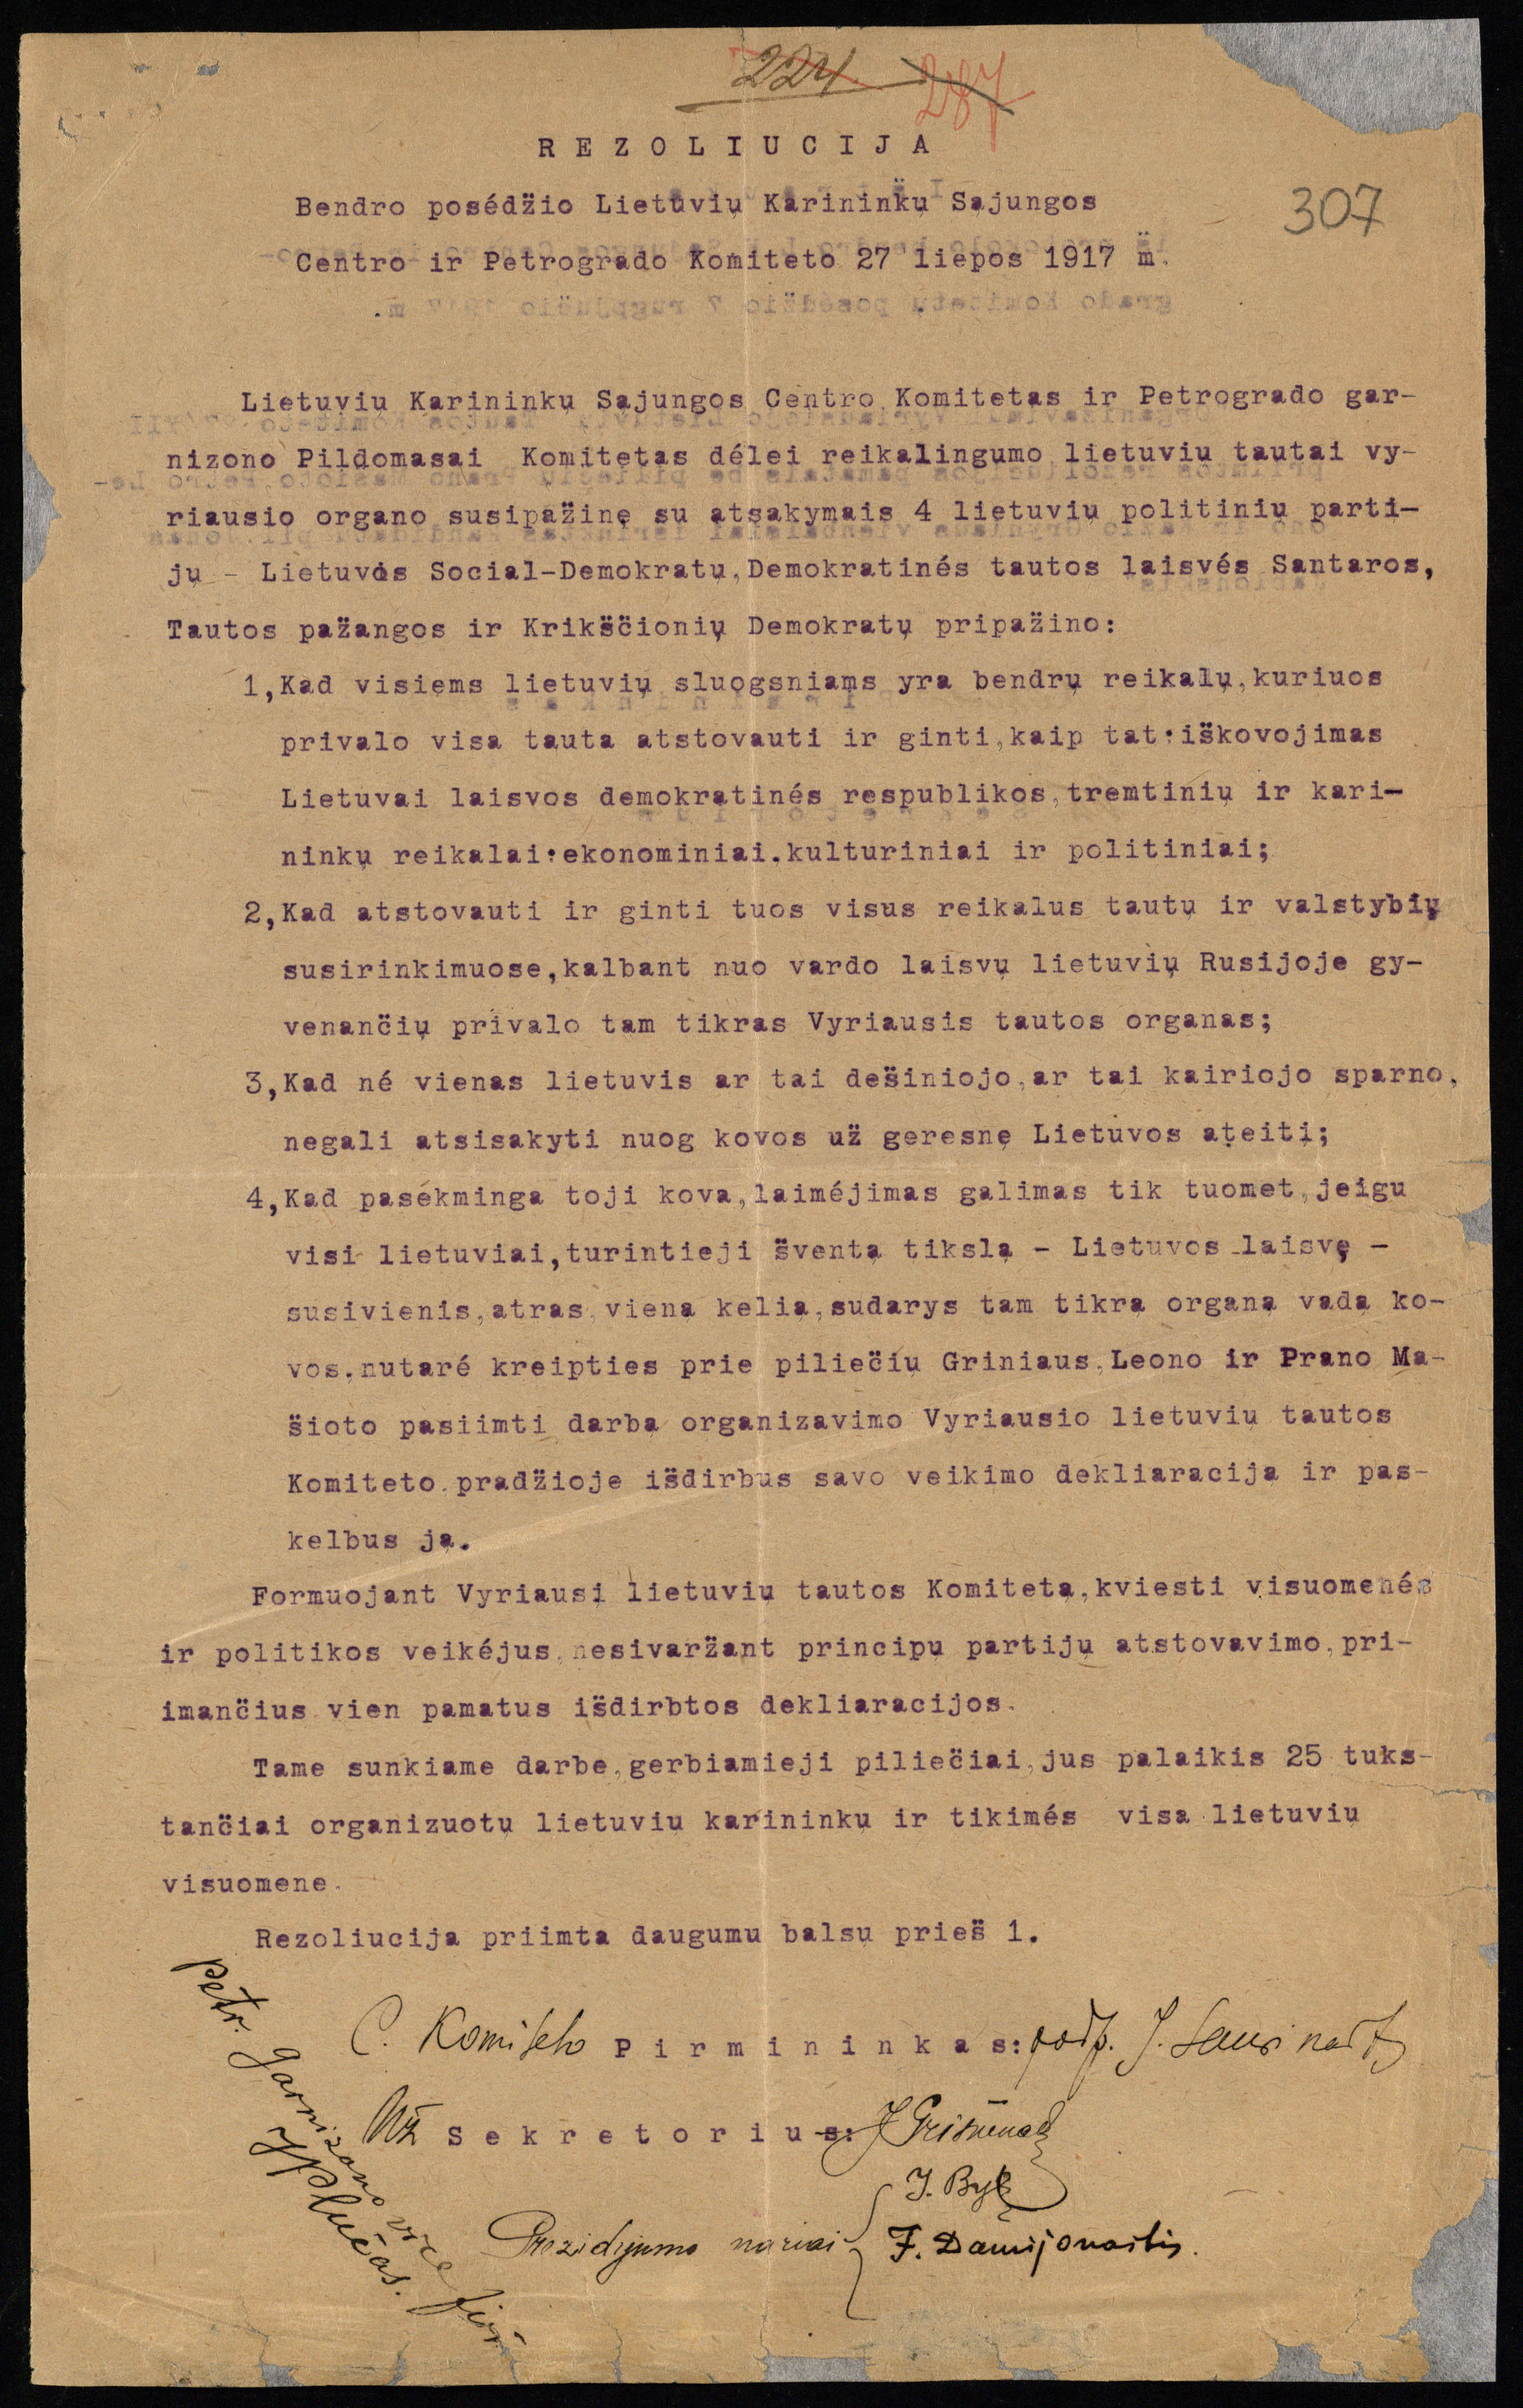 Lietuvių karininkų sąjungos centro komiteto ir Petrogrado įgulos Vykdomojo komiteto bendro posėdžio, įvykusio 1917 m. liepos 27 d., rezoliucija